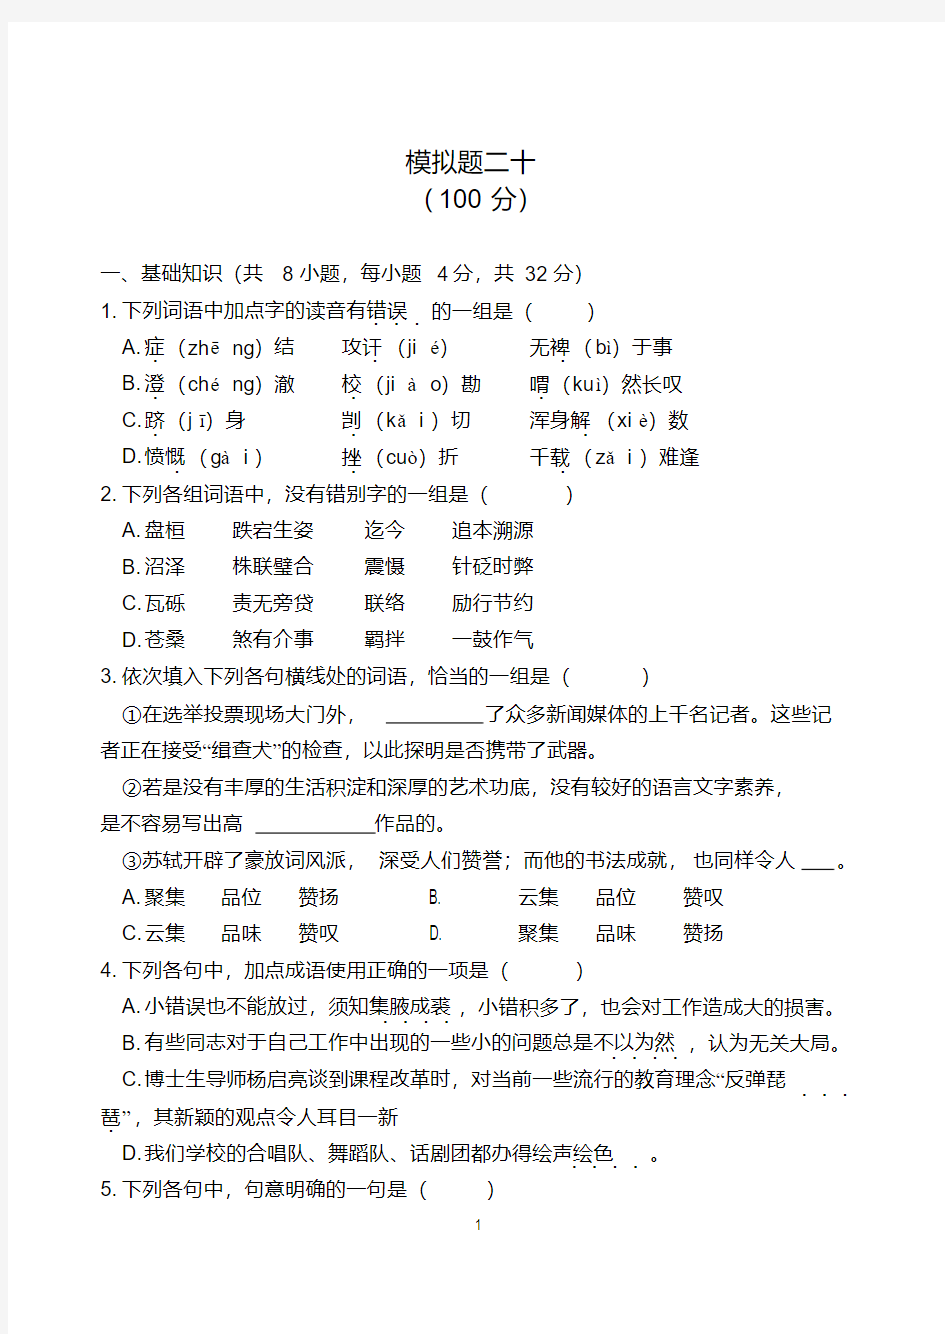 (完整版)2018年重庆对口高职升学考试语文模拟题二十